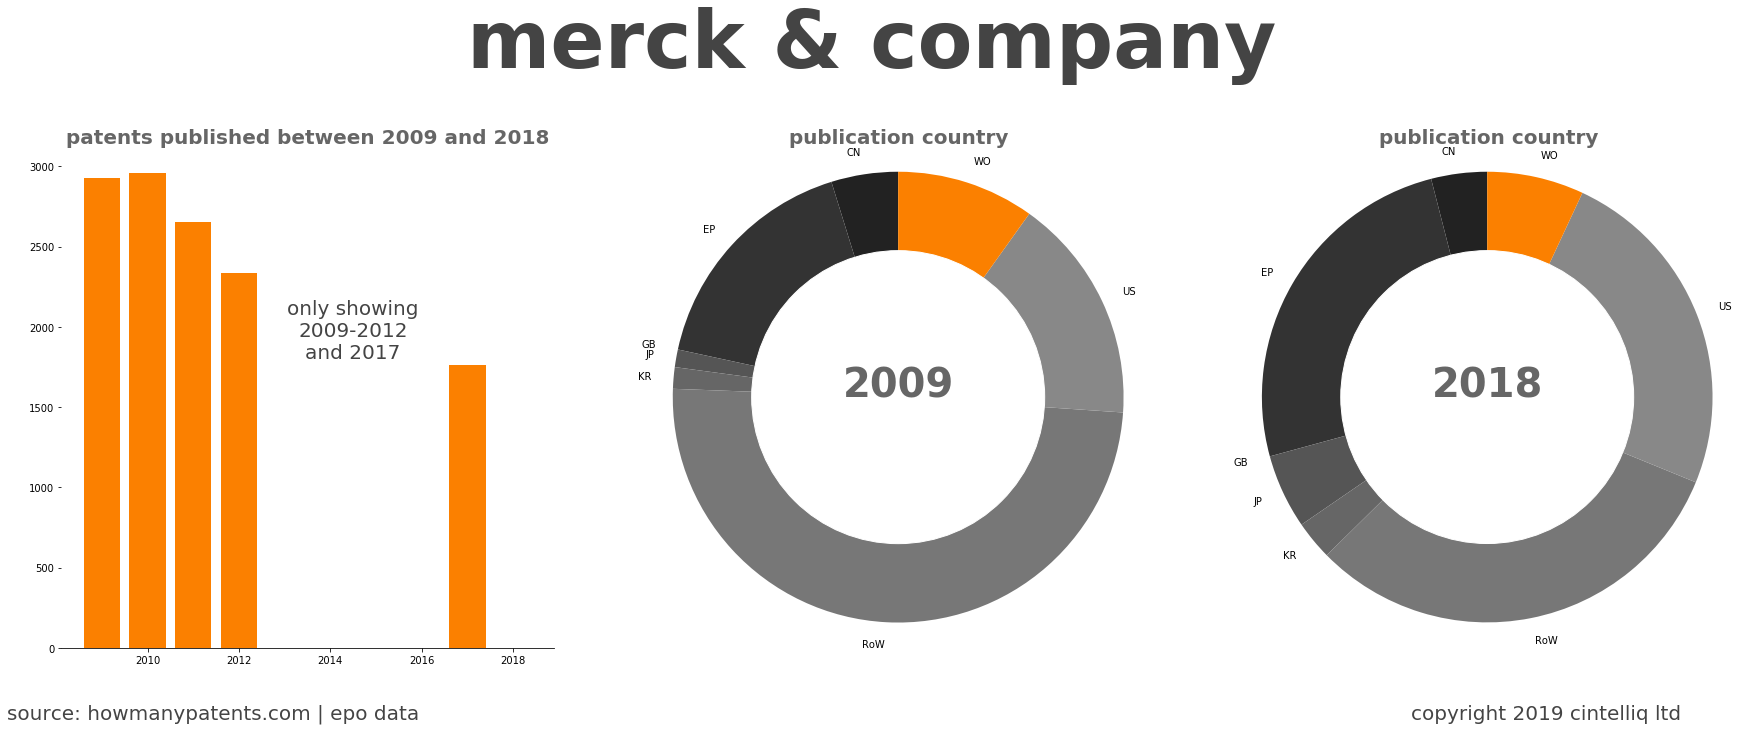 summary of patents for Merck & Company